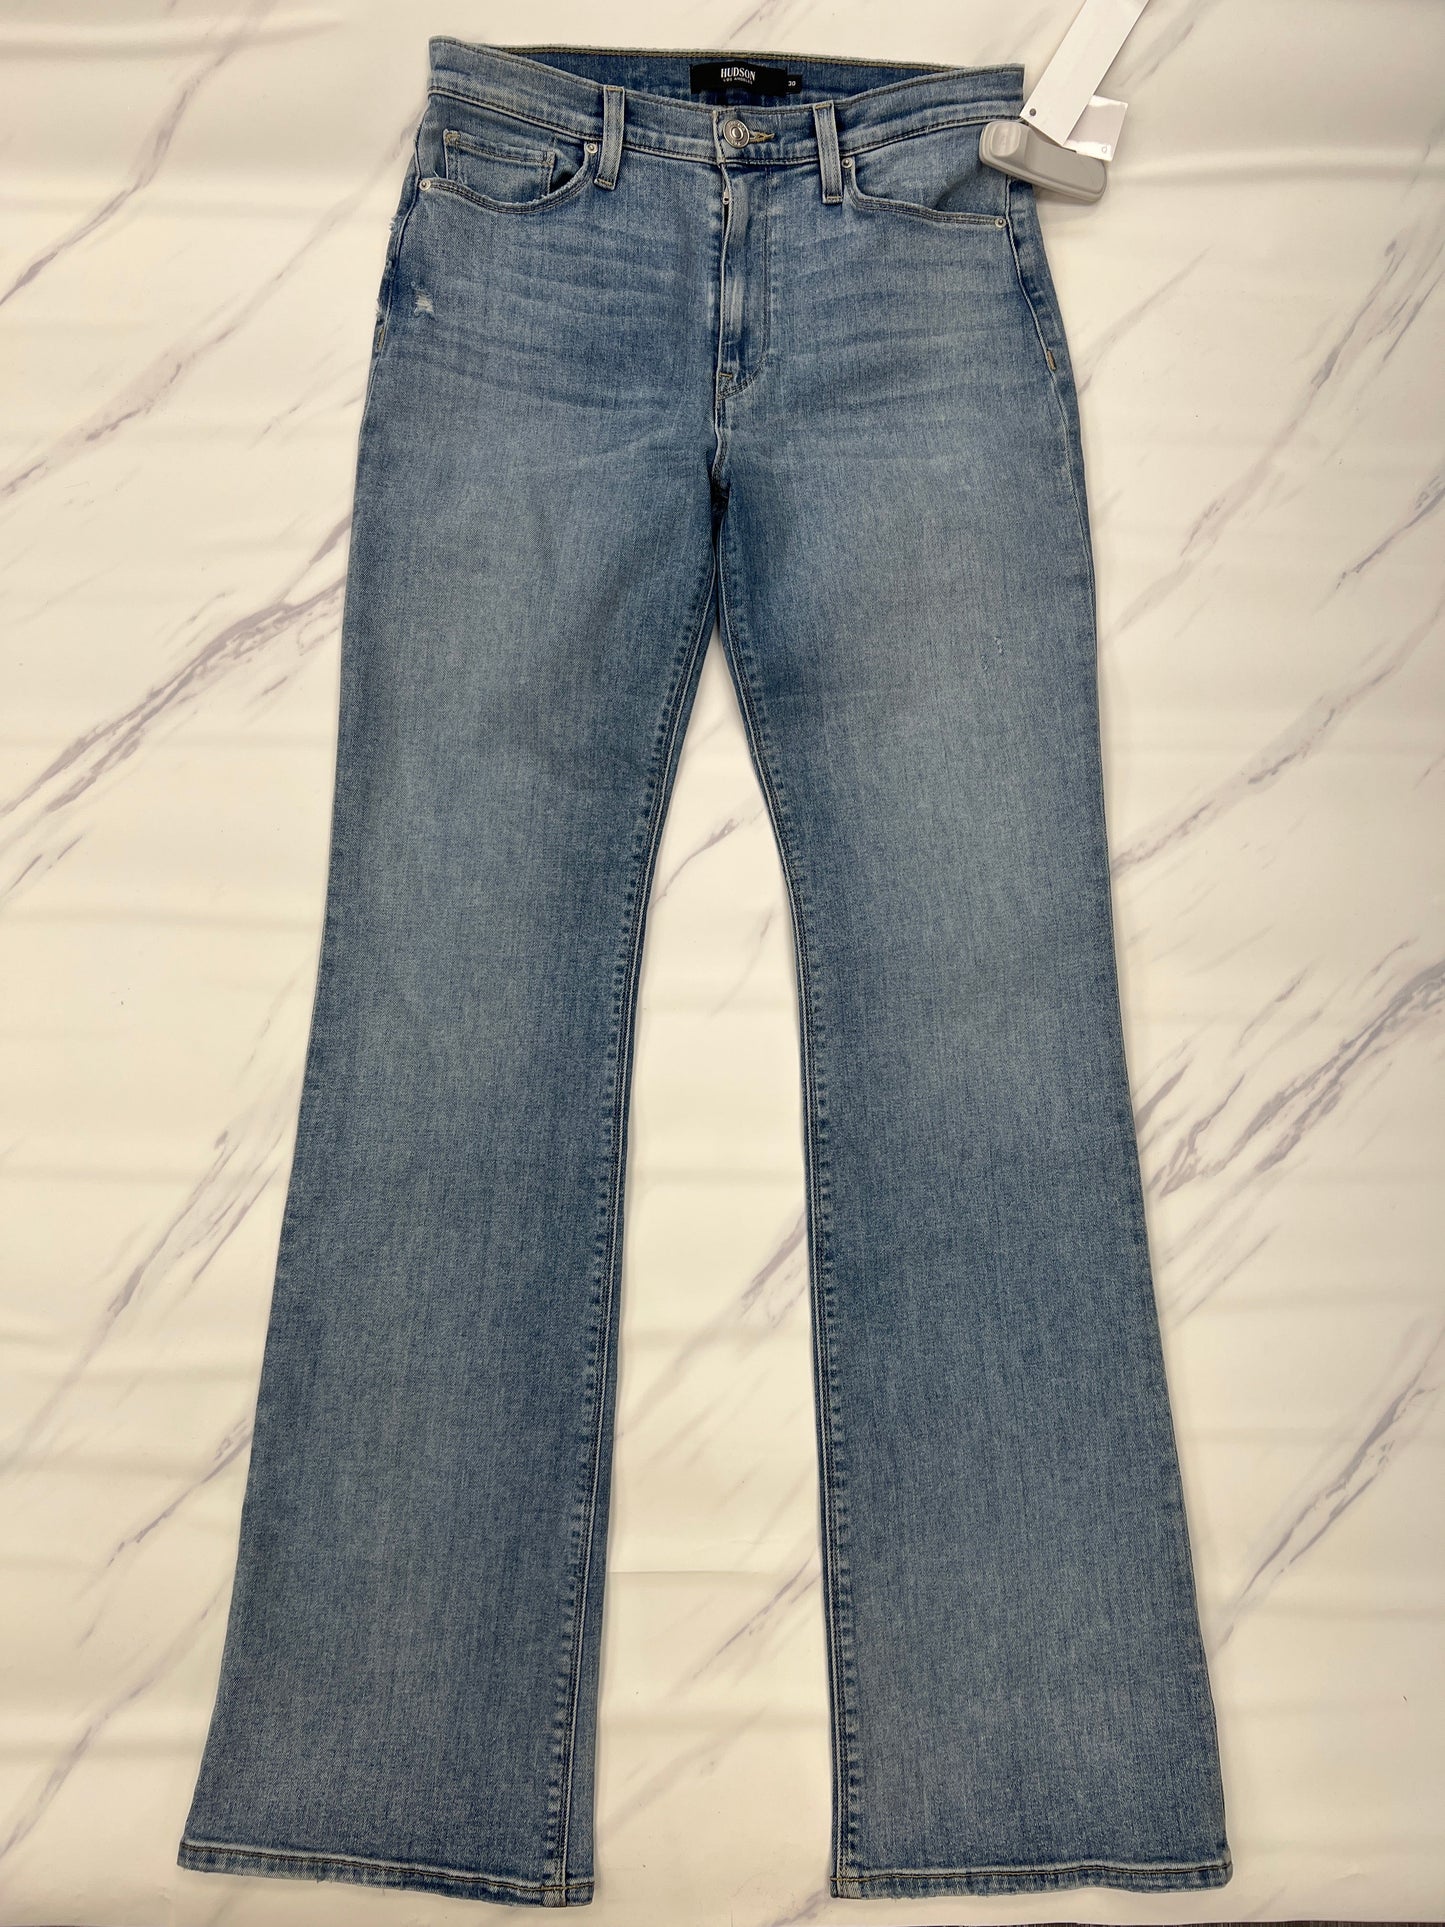 Jeans Designer Hudson, Size 10